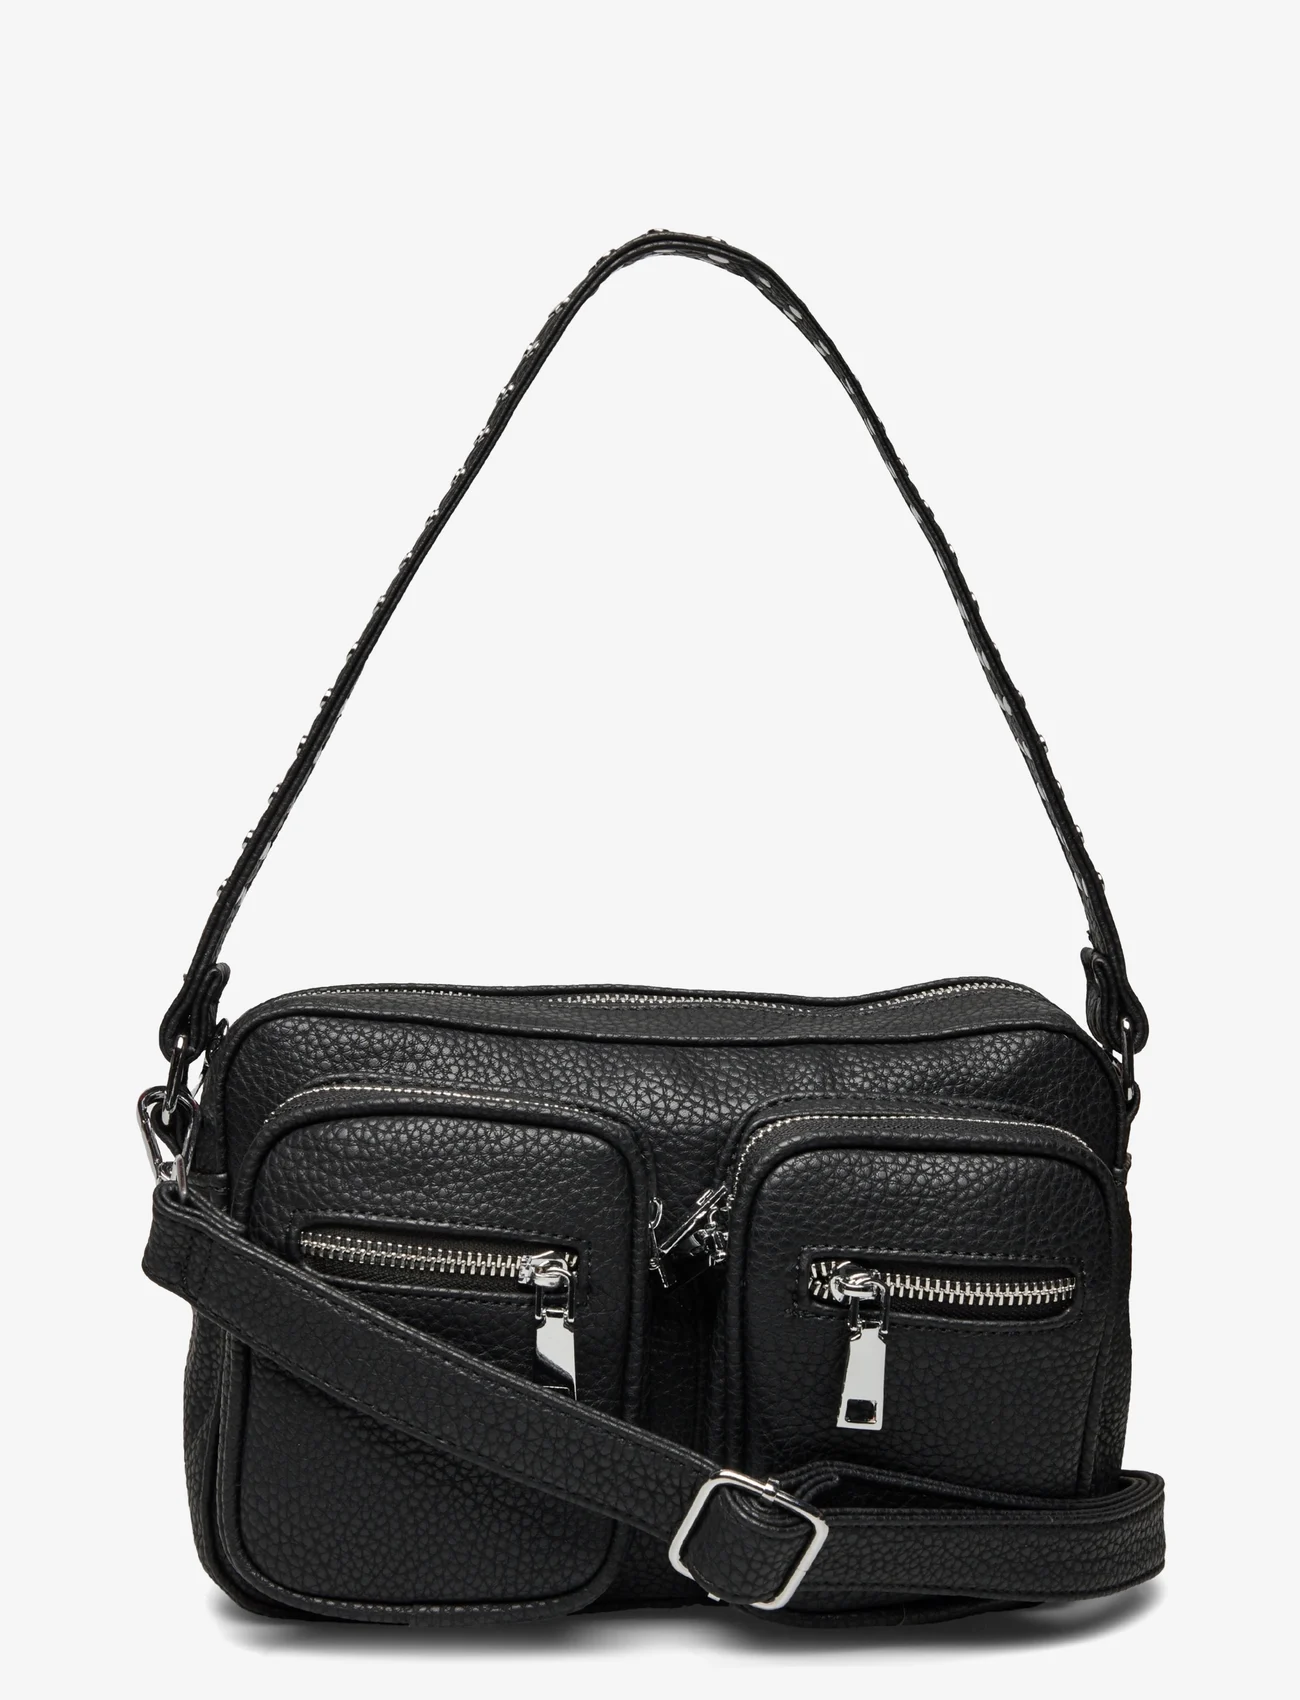 Noella - Celina bag Black Nappa Look - odzież imprezowa w cenach outletowych - black nappa look - 0